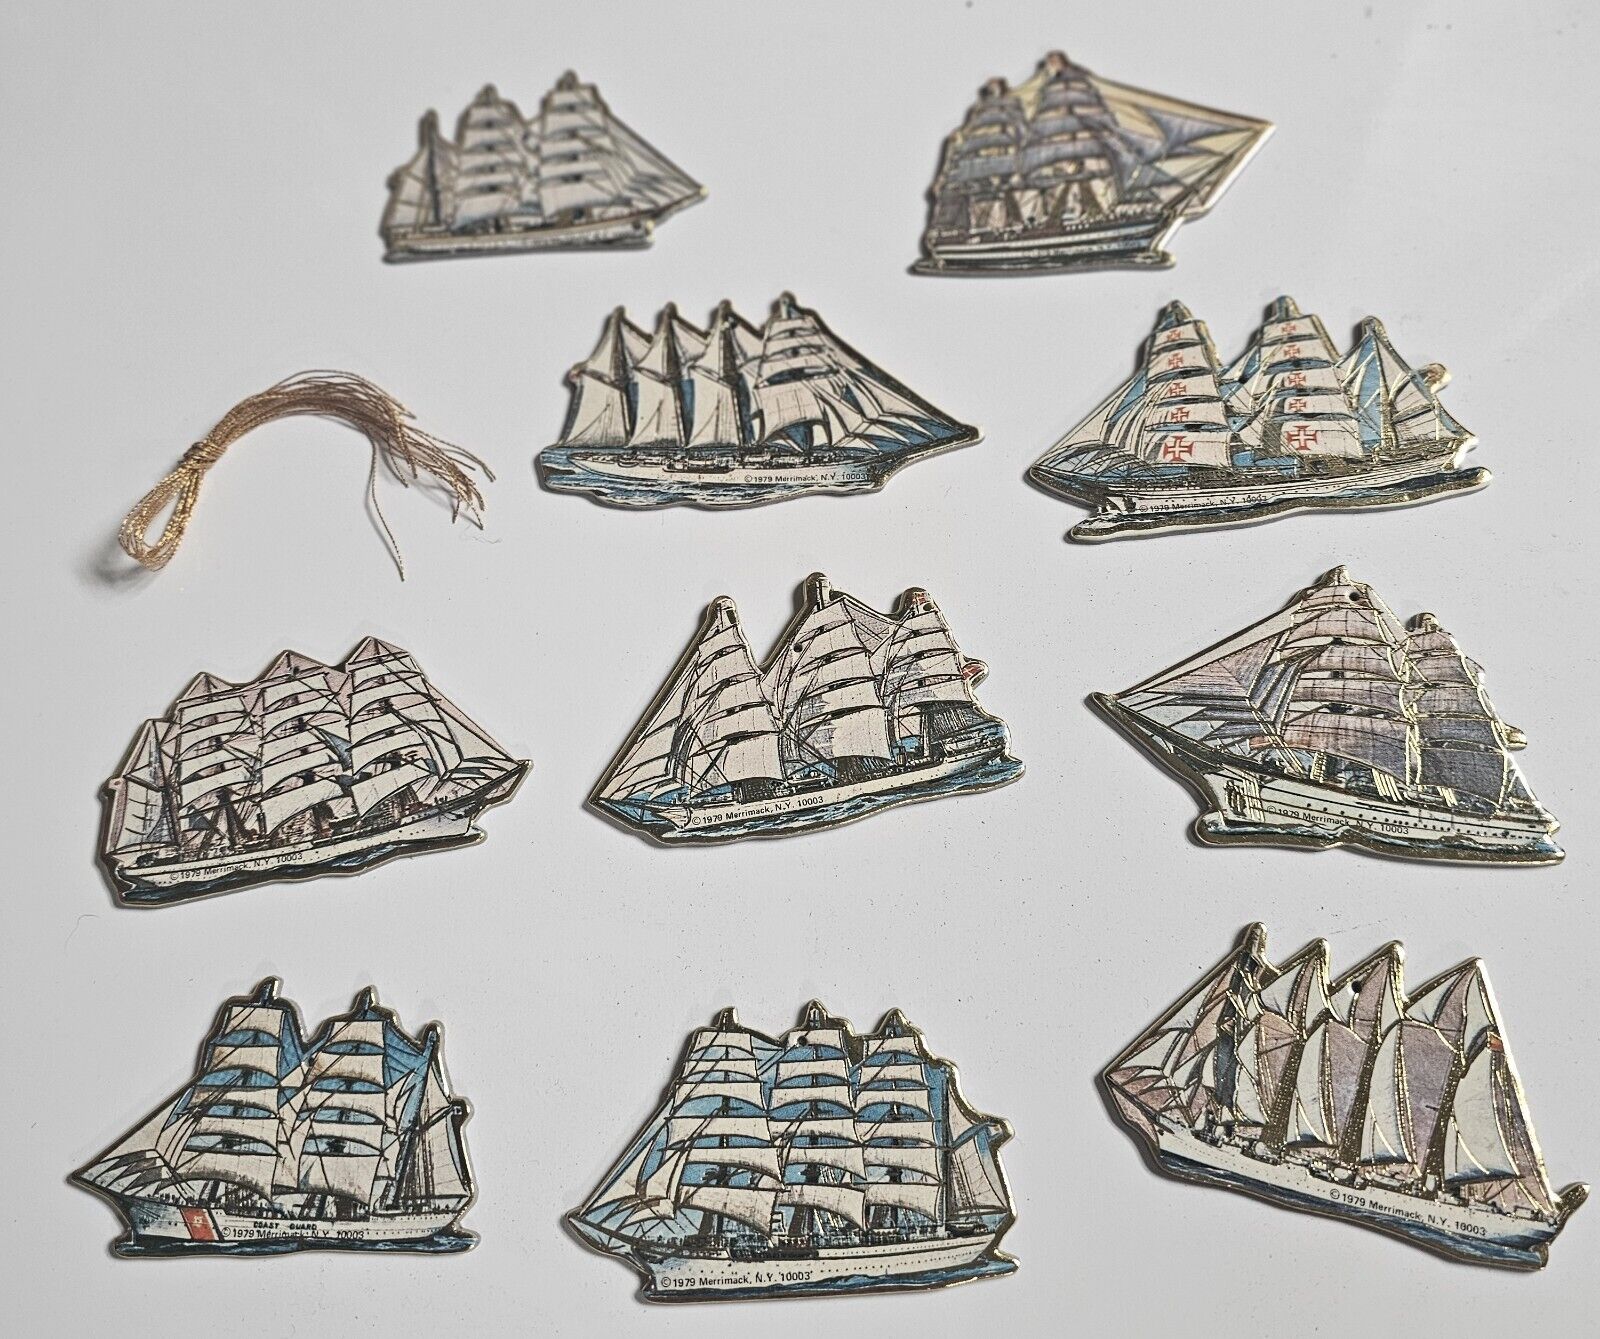 Vintage 1979 Merrimack N.Y. 10003 Paper Ship Ornaments Set Of 10 Ships W/ String